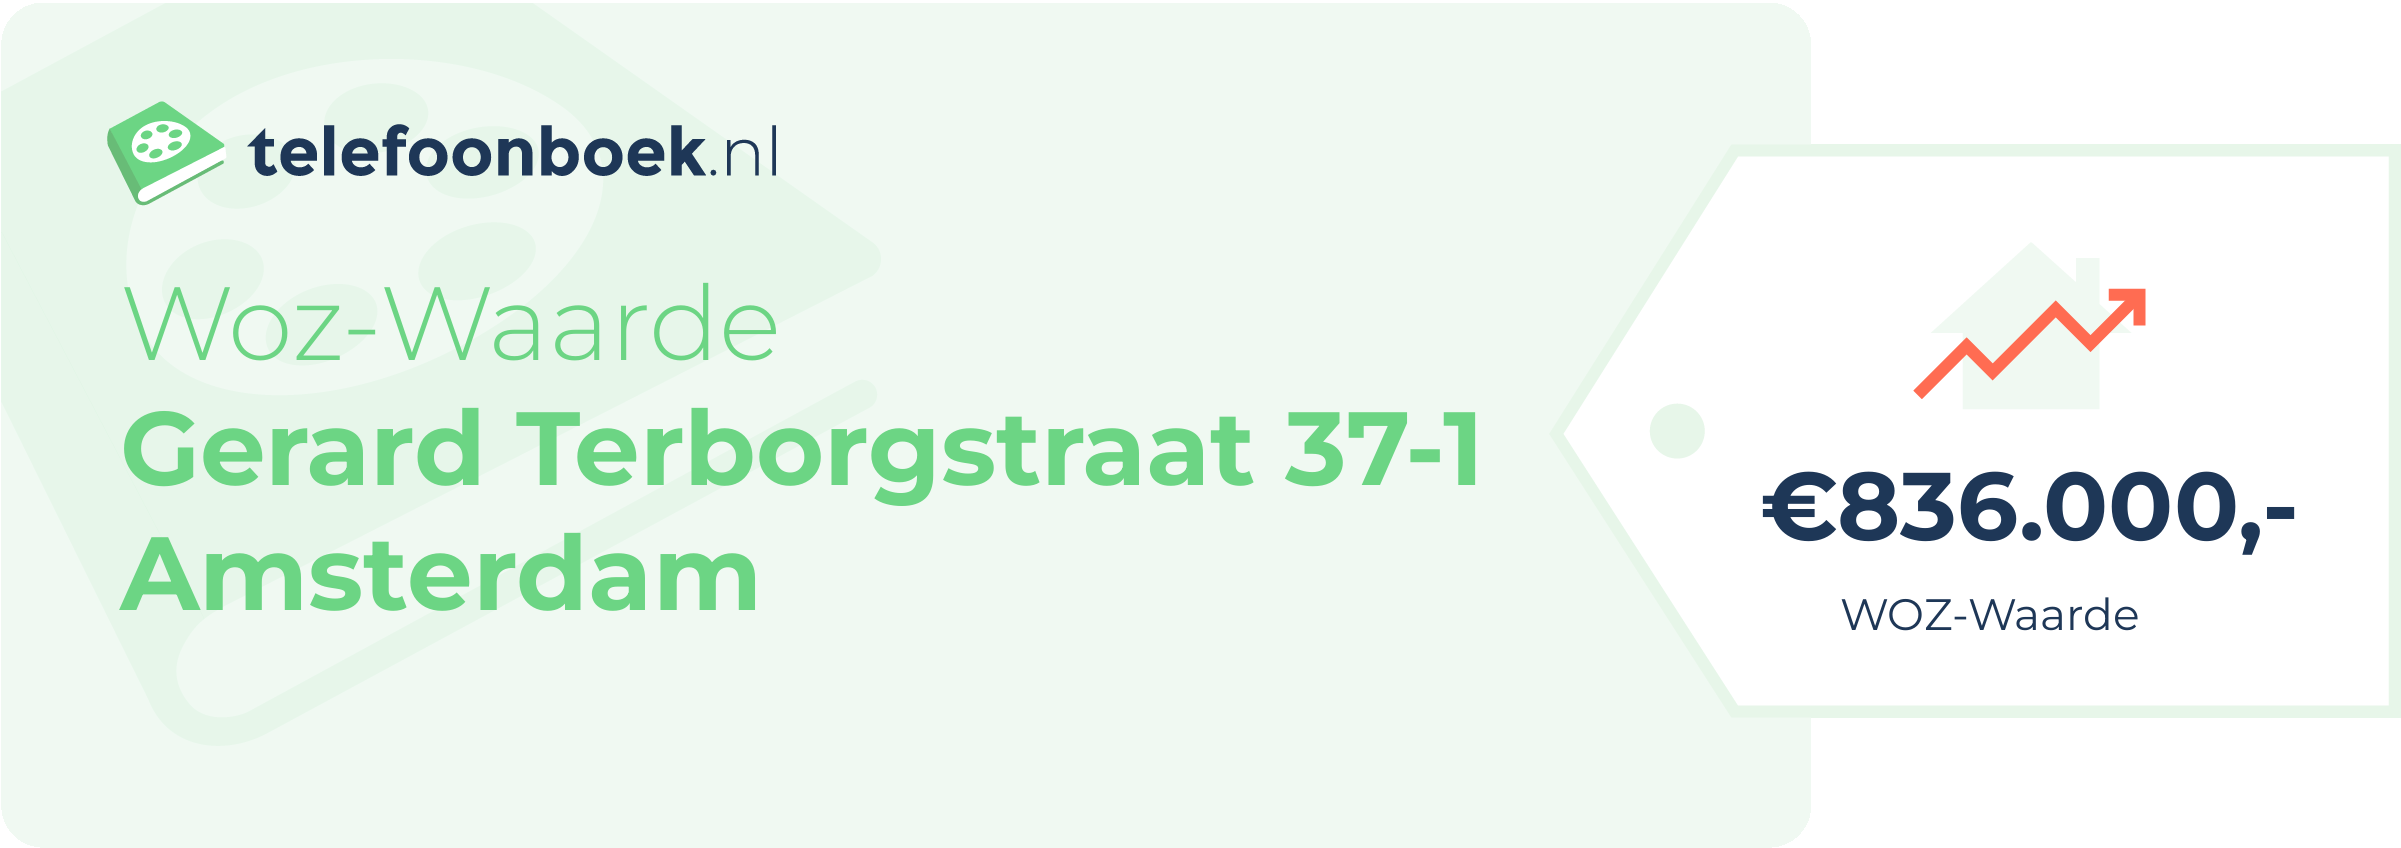 WOZ-waarde Gerard Terborgstraat 37-1 Amsterdam